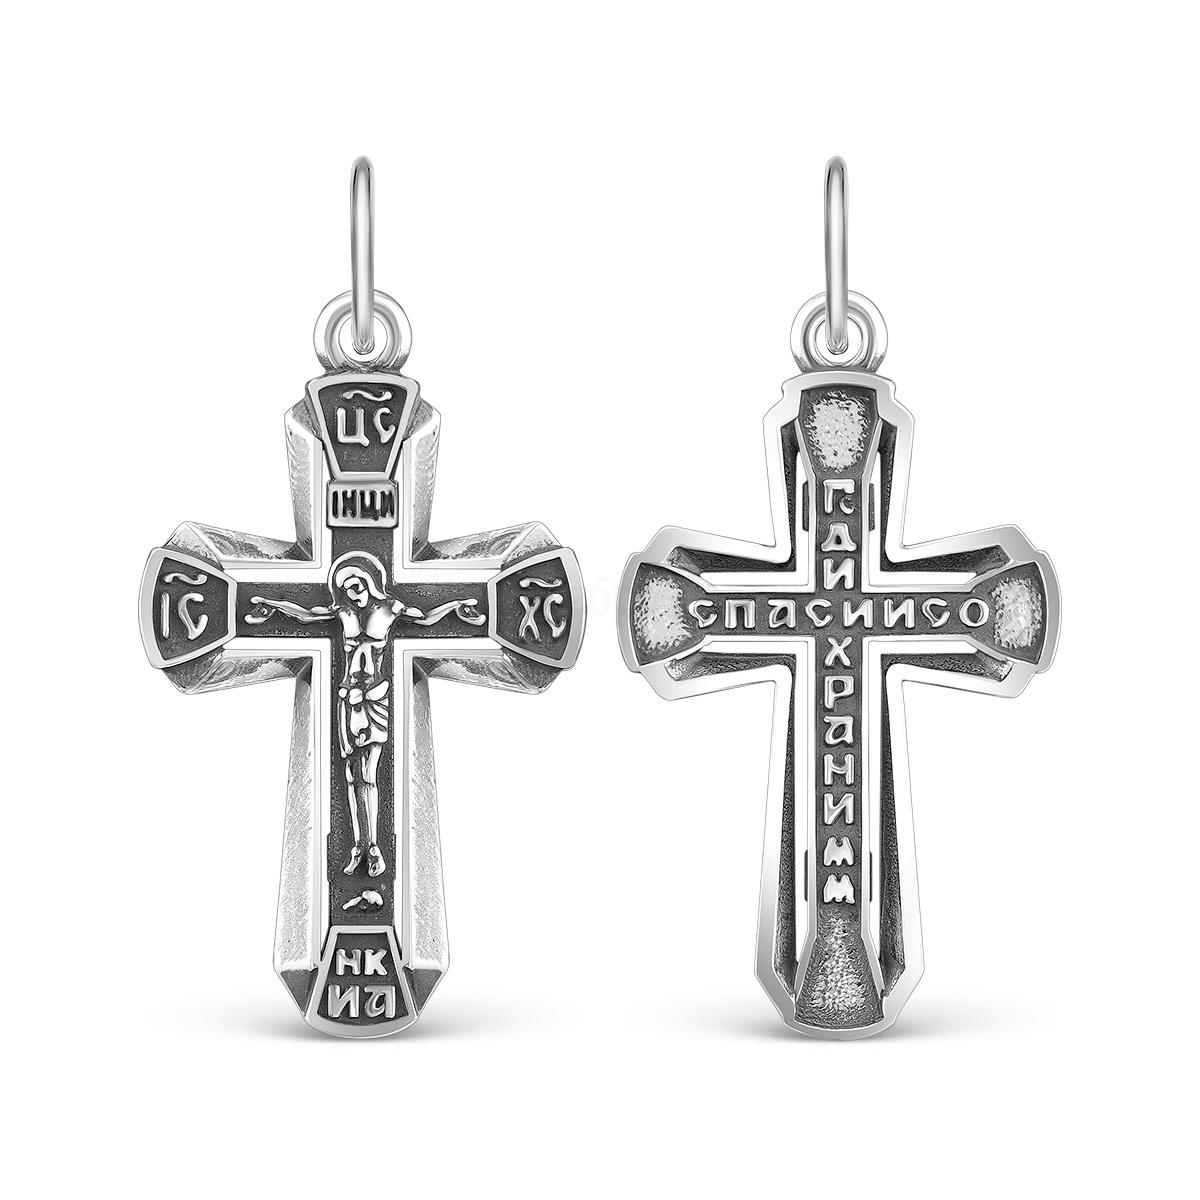 Крест из чернёного серебра - Господи спаси и сохрани мя, 3,3 см К3-593ч